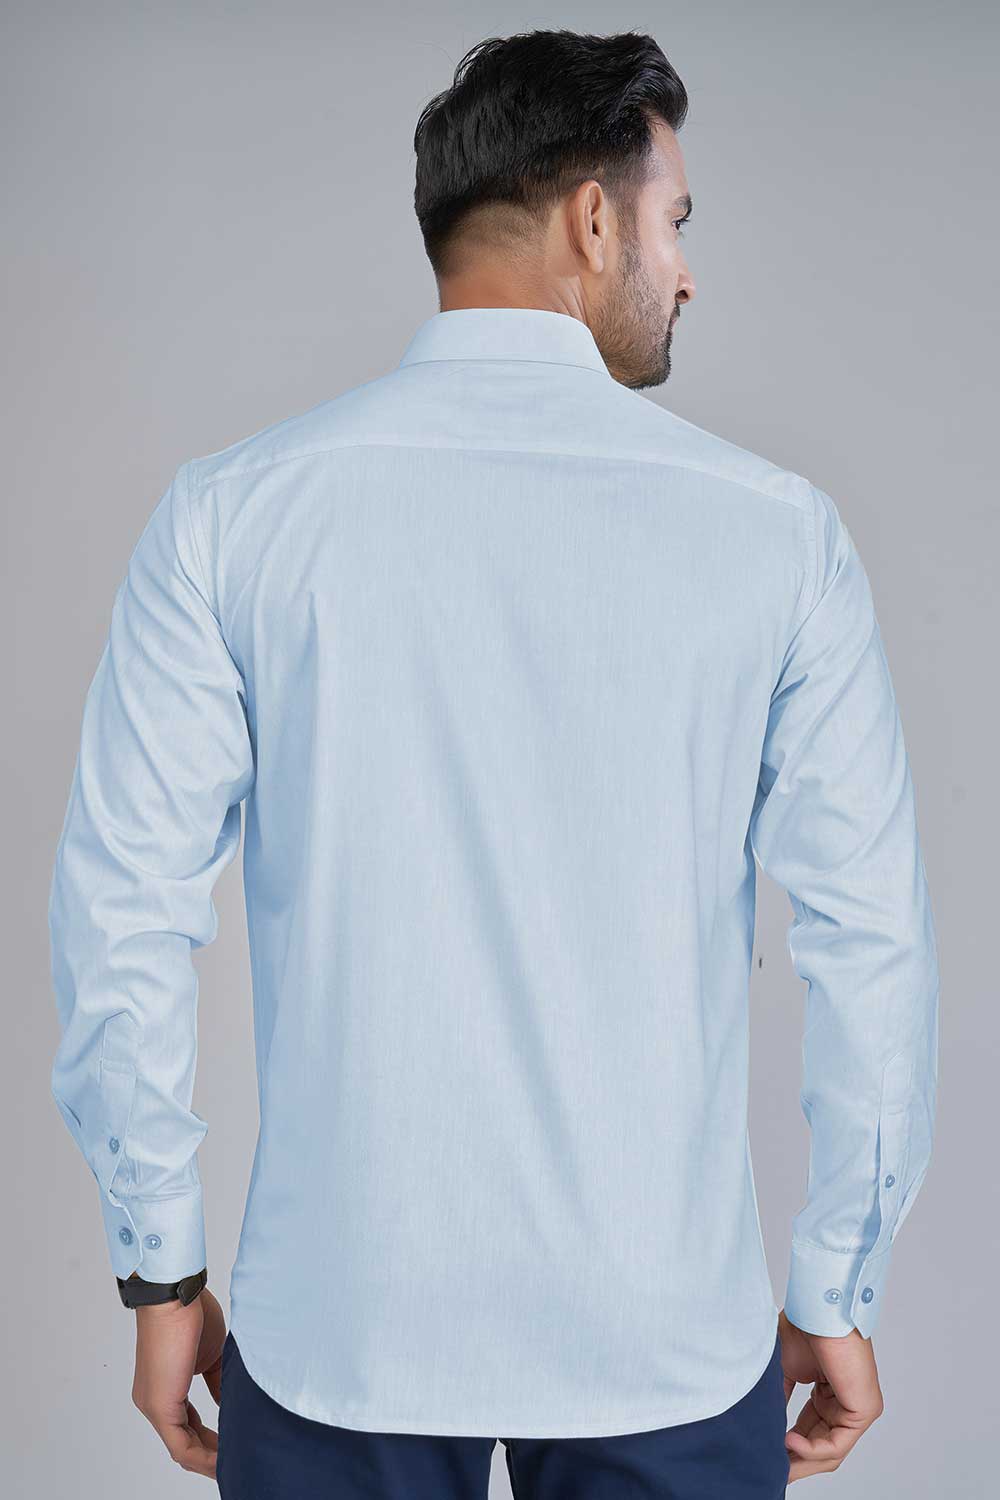 light blue Oxford shirt